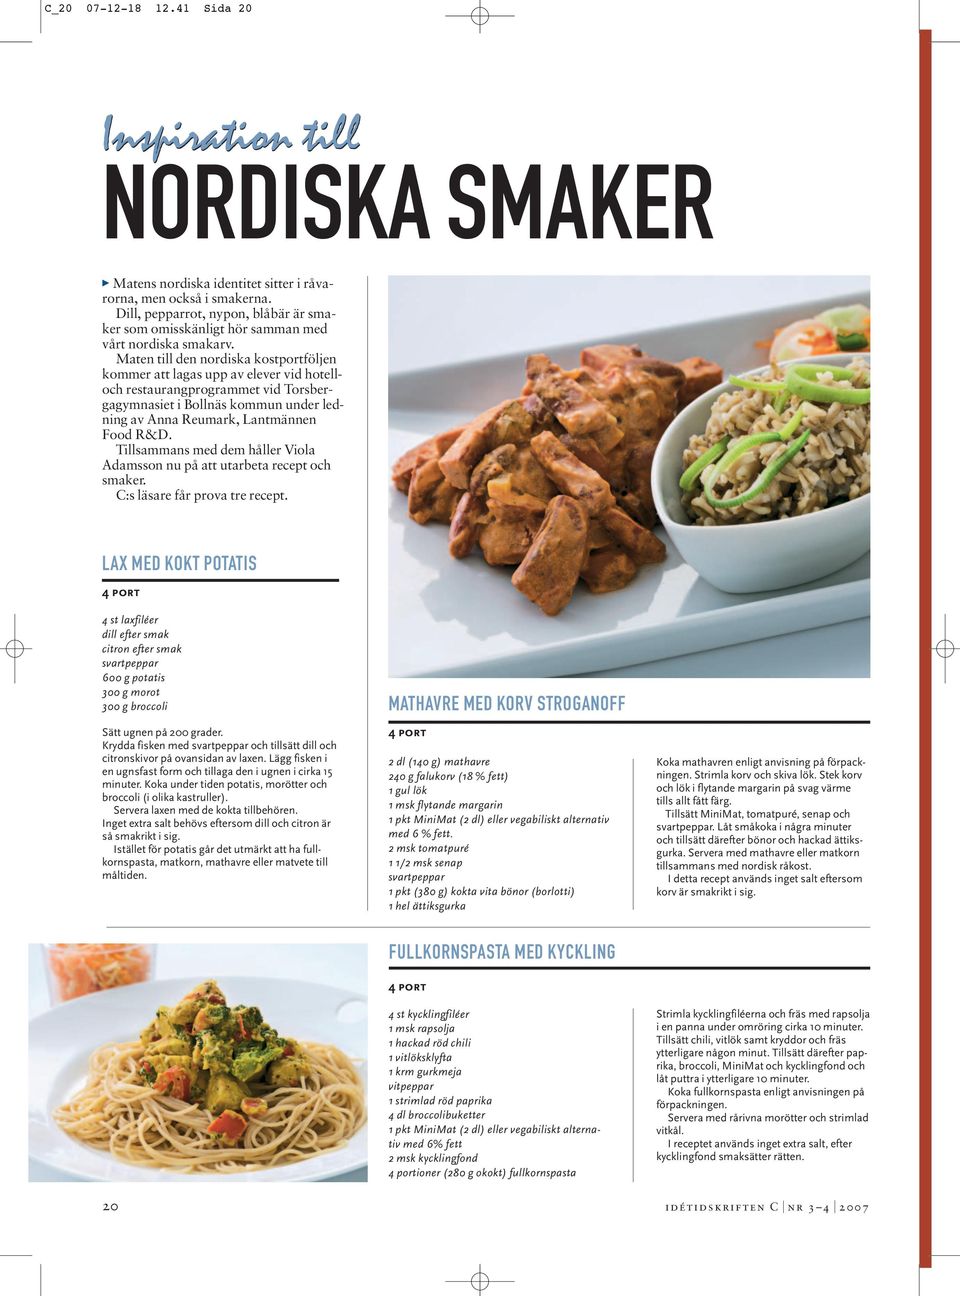 Maten till den nordiska kostportföljen kommer att lagas upp av elever vid hotelloch restaurangprogrammet vid Torsbergagymnasiet i Bollnäs kommun under ledning av Anna Reumark, Lantmännen Food R&D.